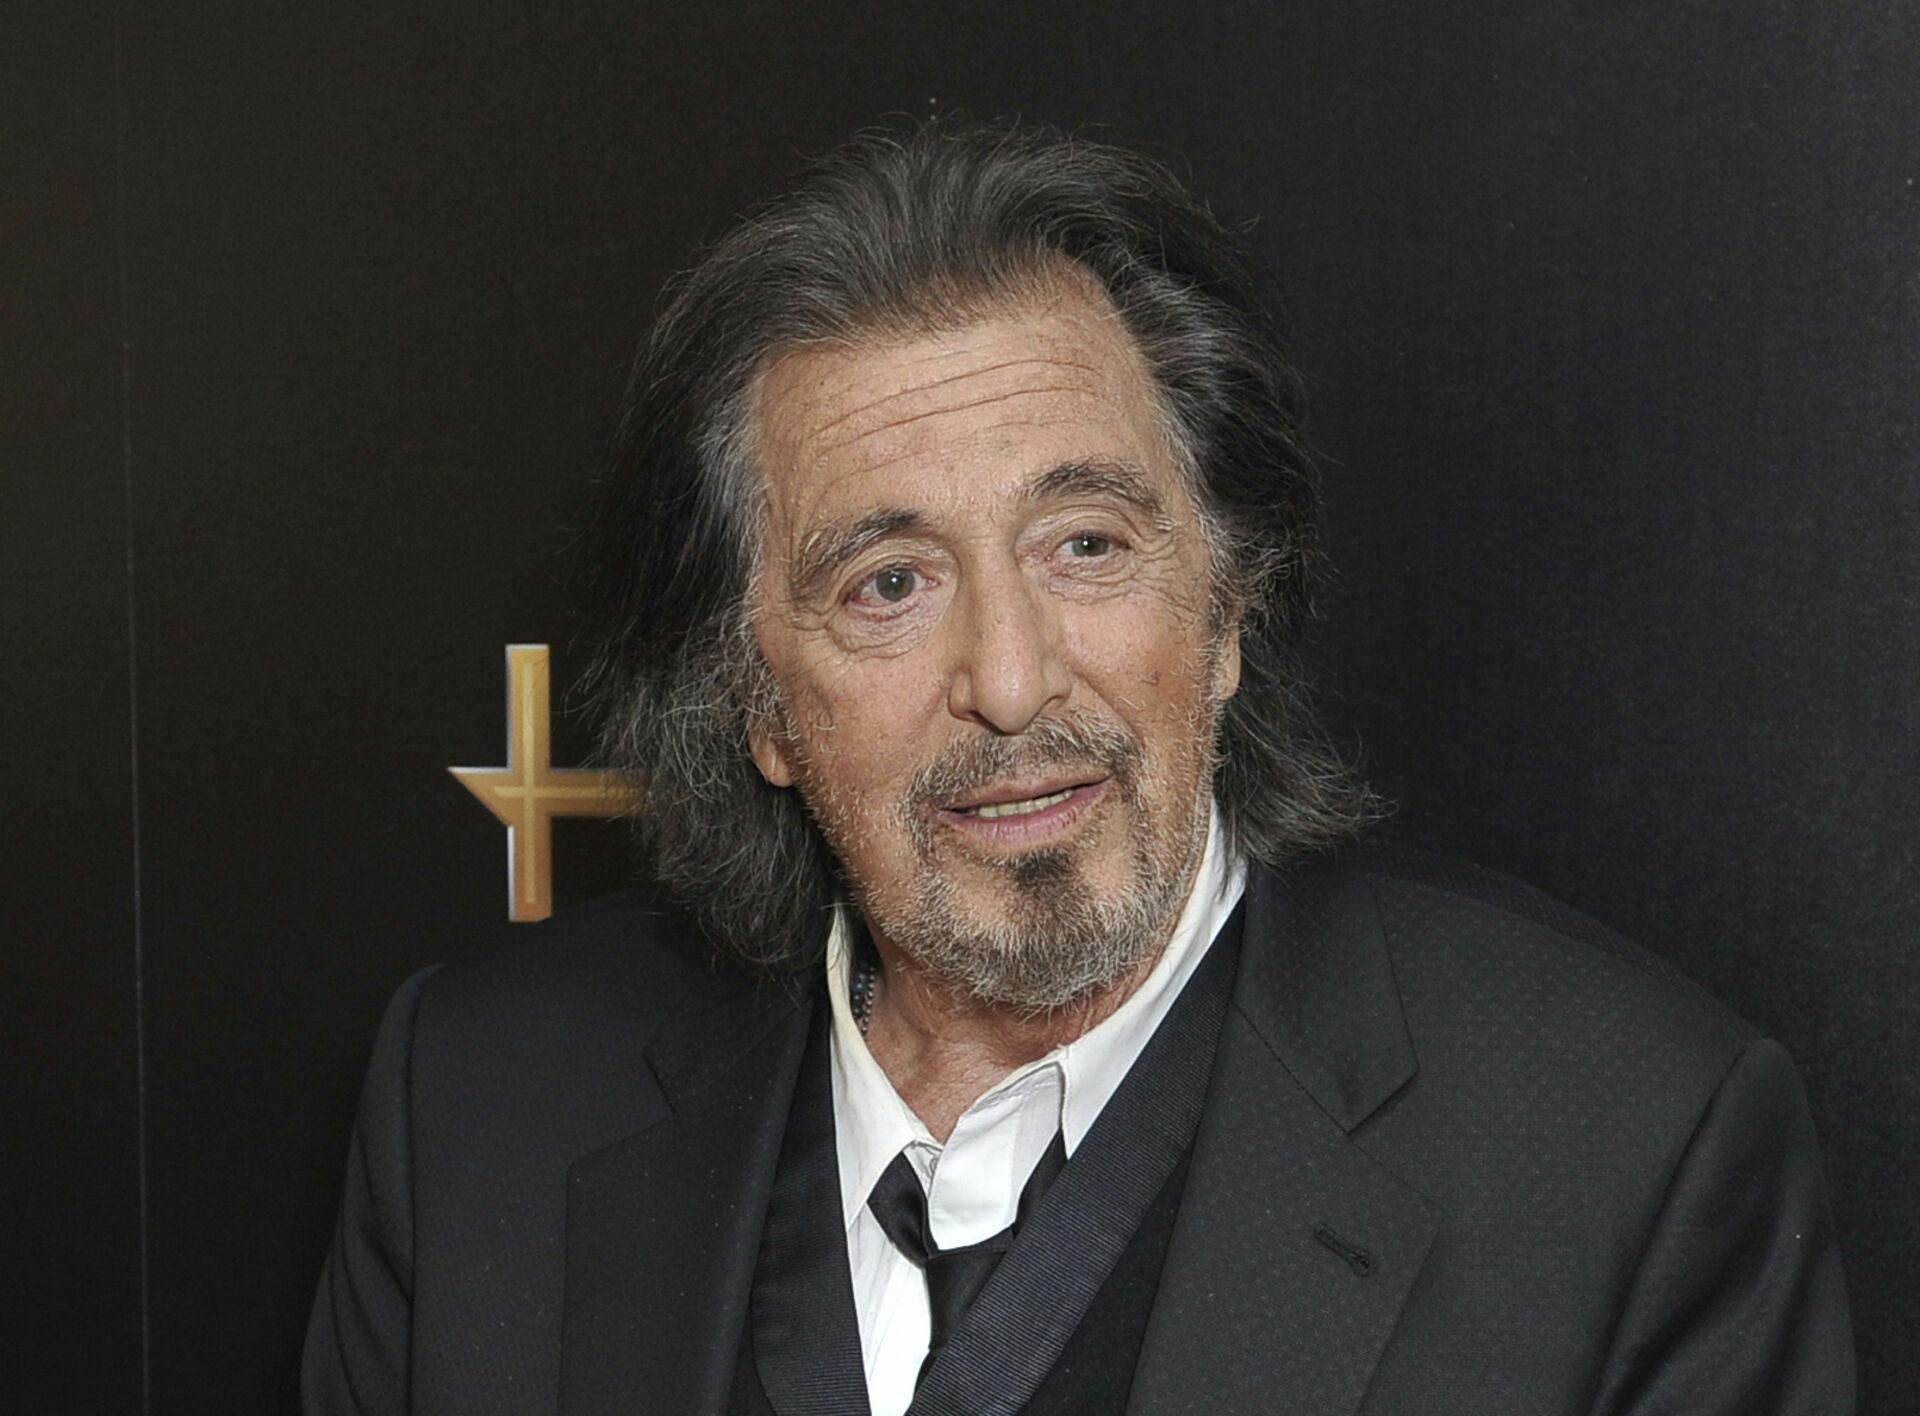 Al Pacino sætter endelig ord på nyheden om, at han skal være far igen som 83-årig.